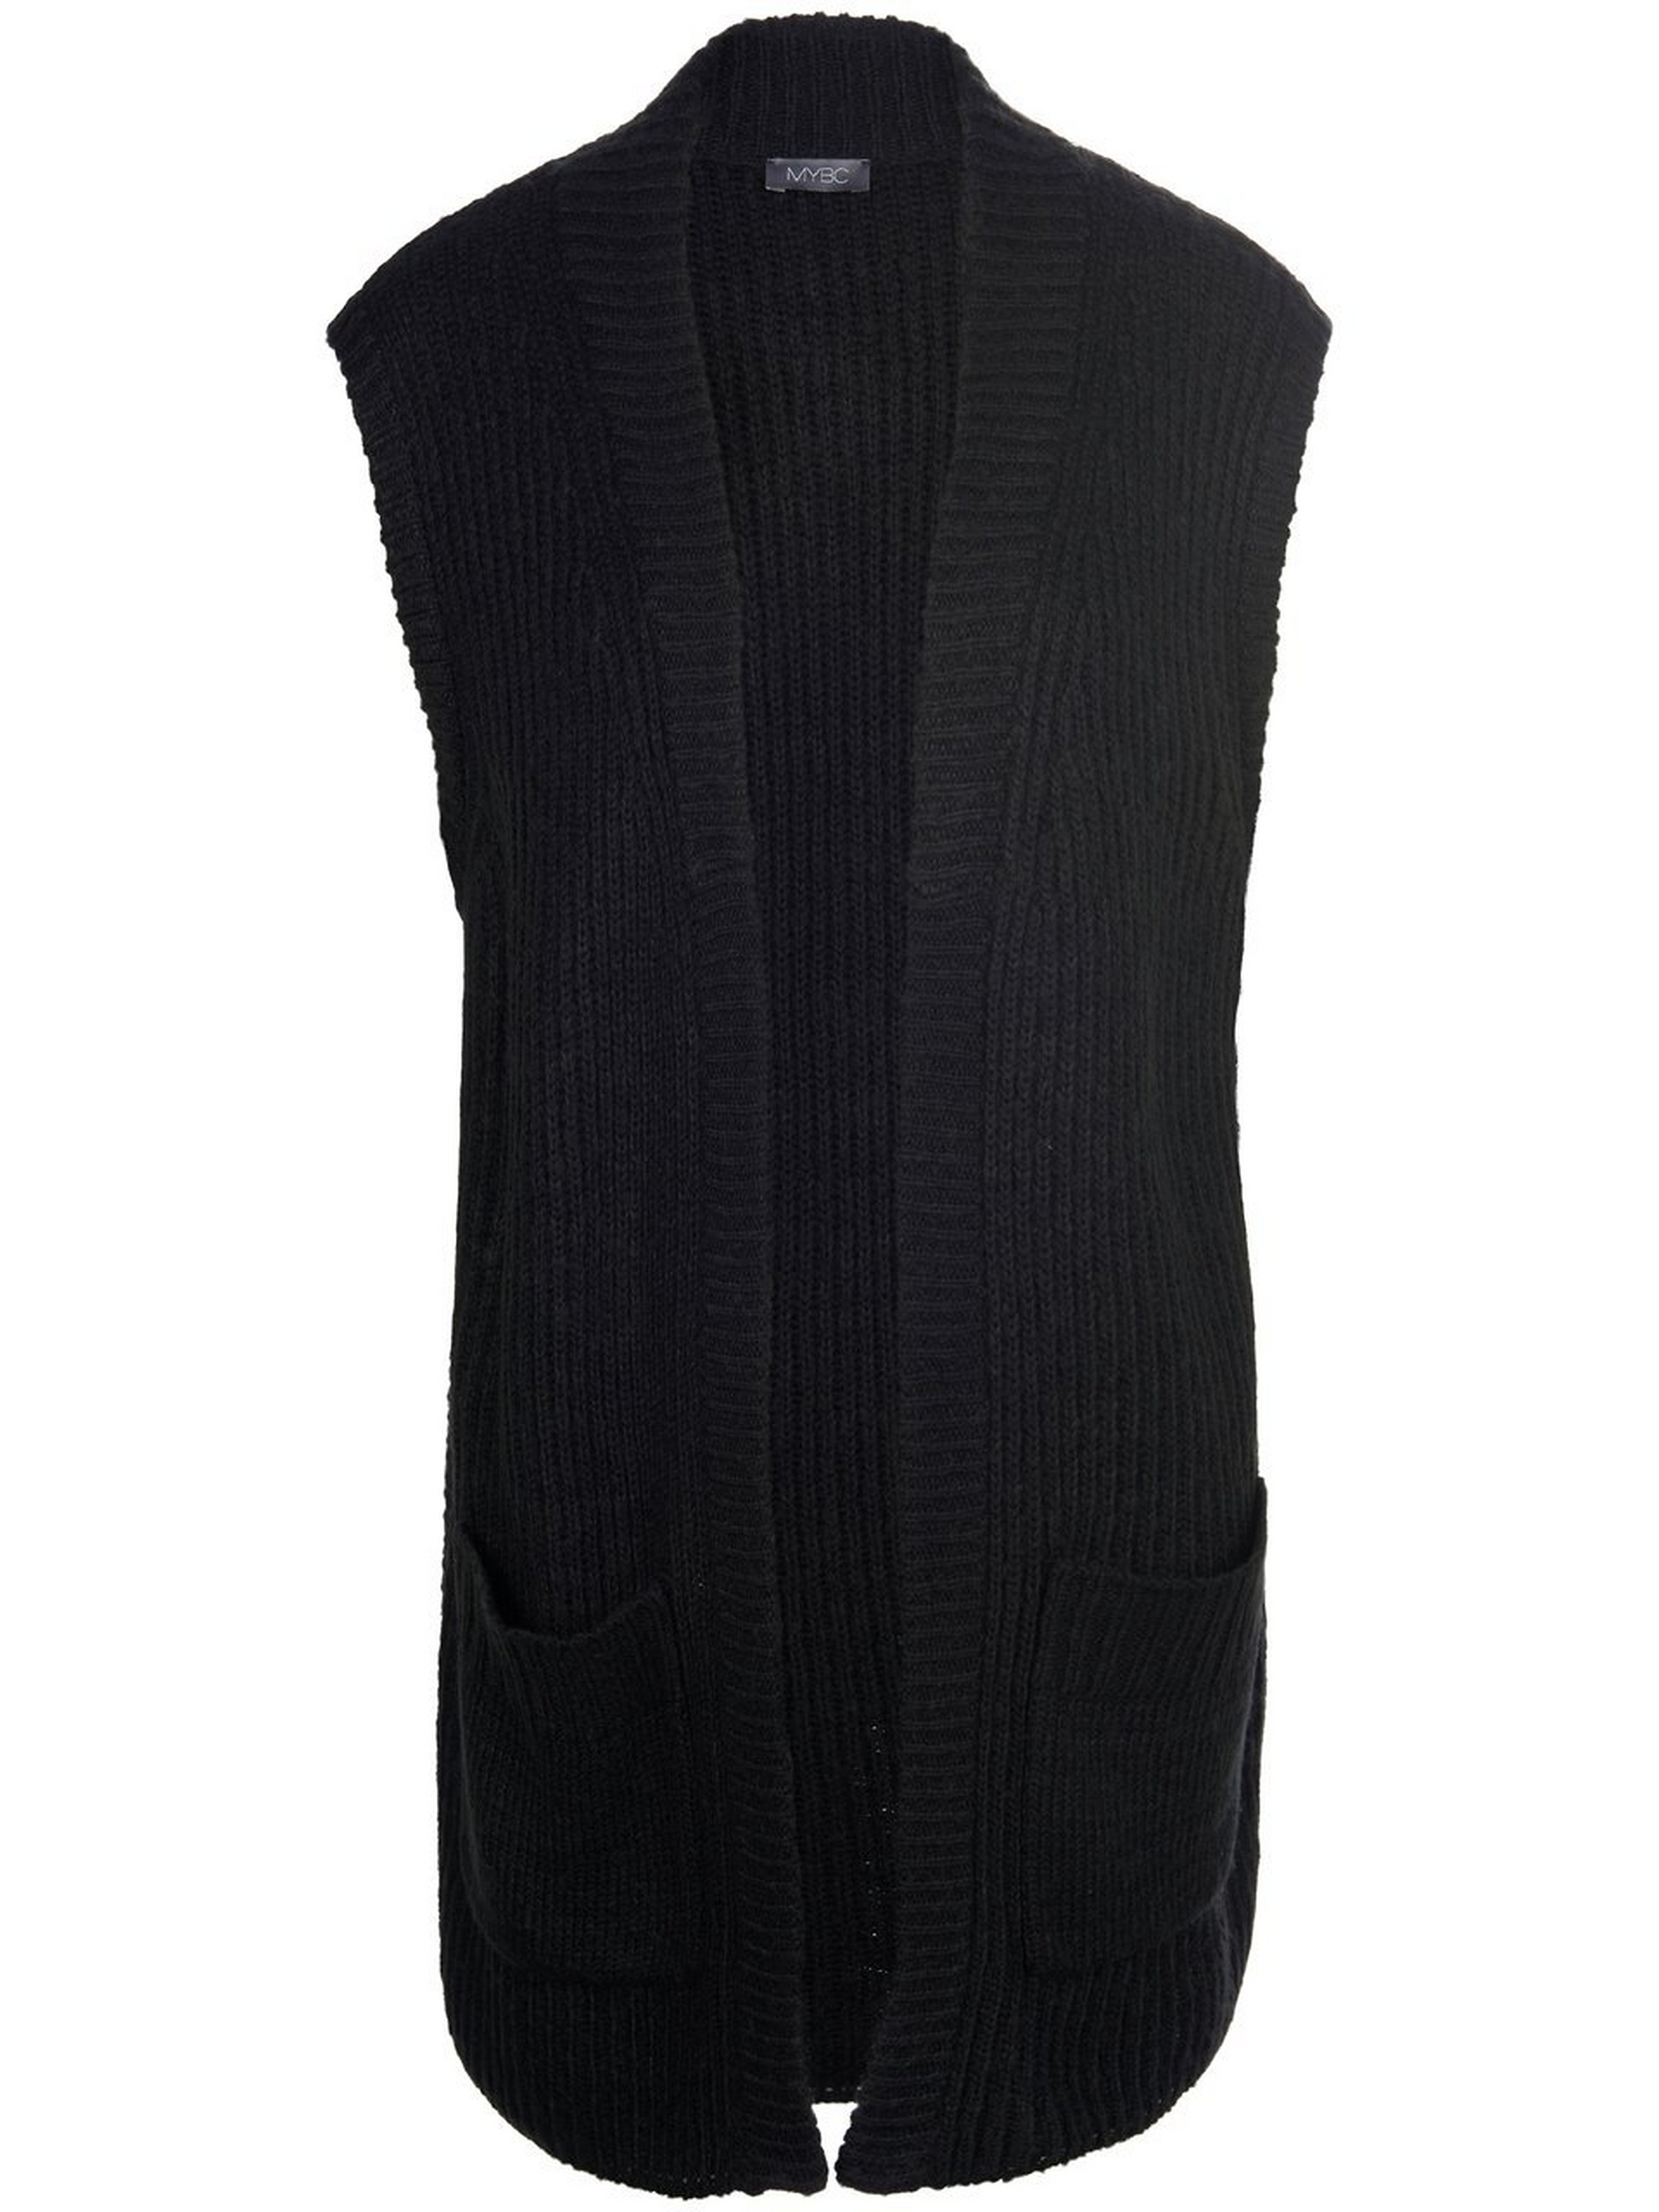 Mouwloos vest in losjes vallend model Van MYBC zwart